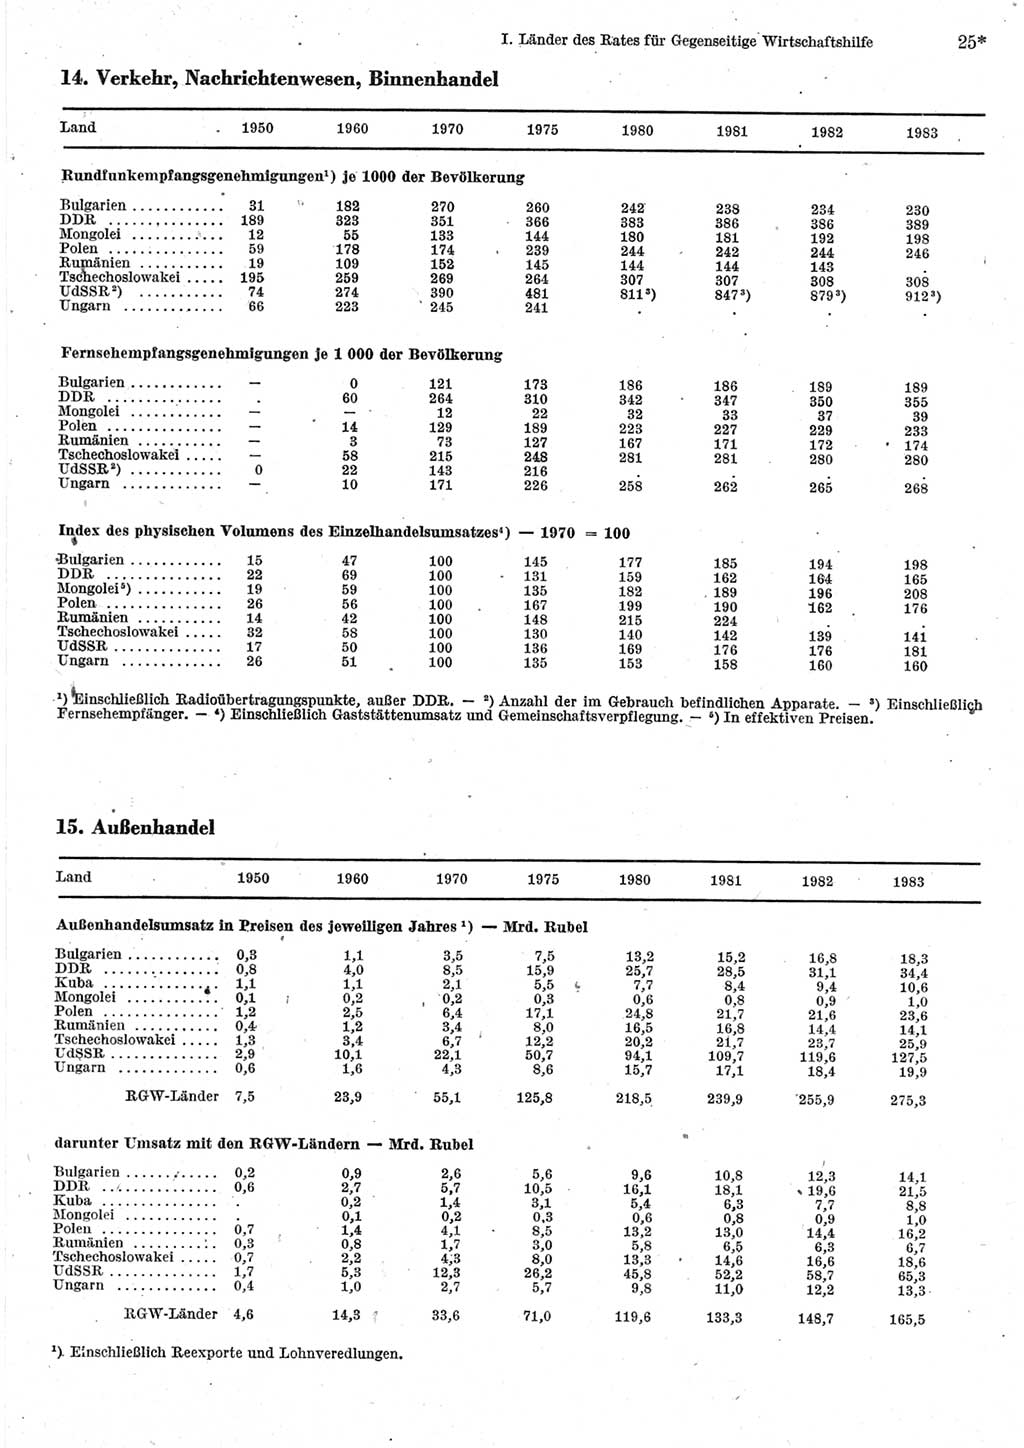 Statistisches Jahrbuch der Deutschen Demokratischen Republik (DDR) 1985, Seite 25 (Stat. Jb. DDR 1985, S. 25)